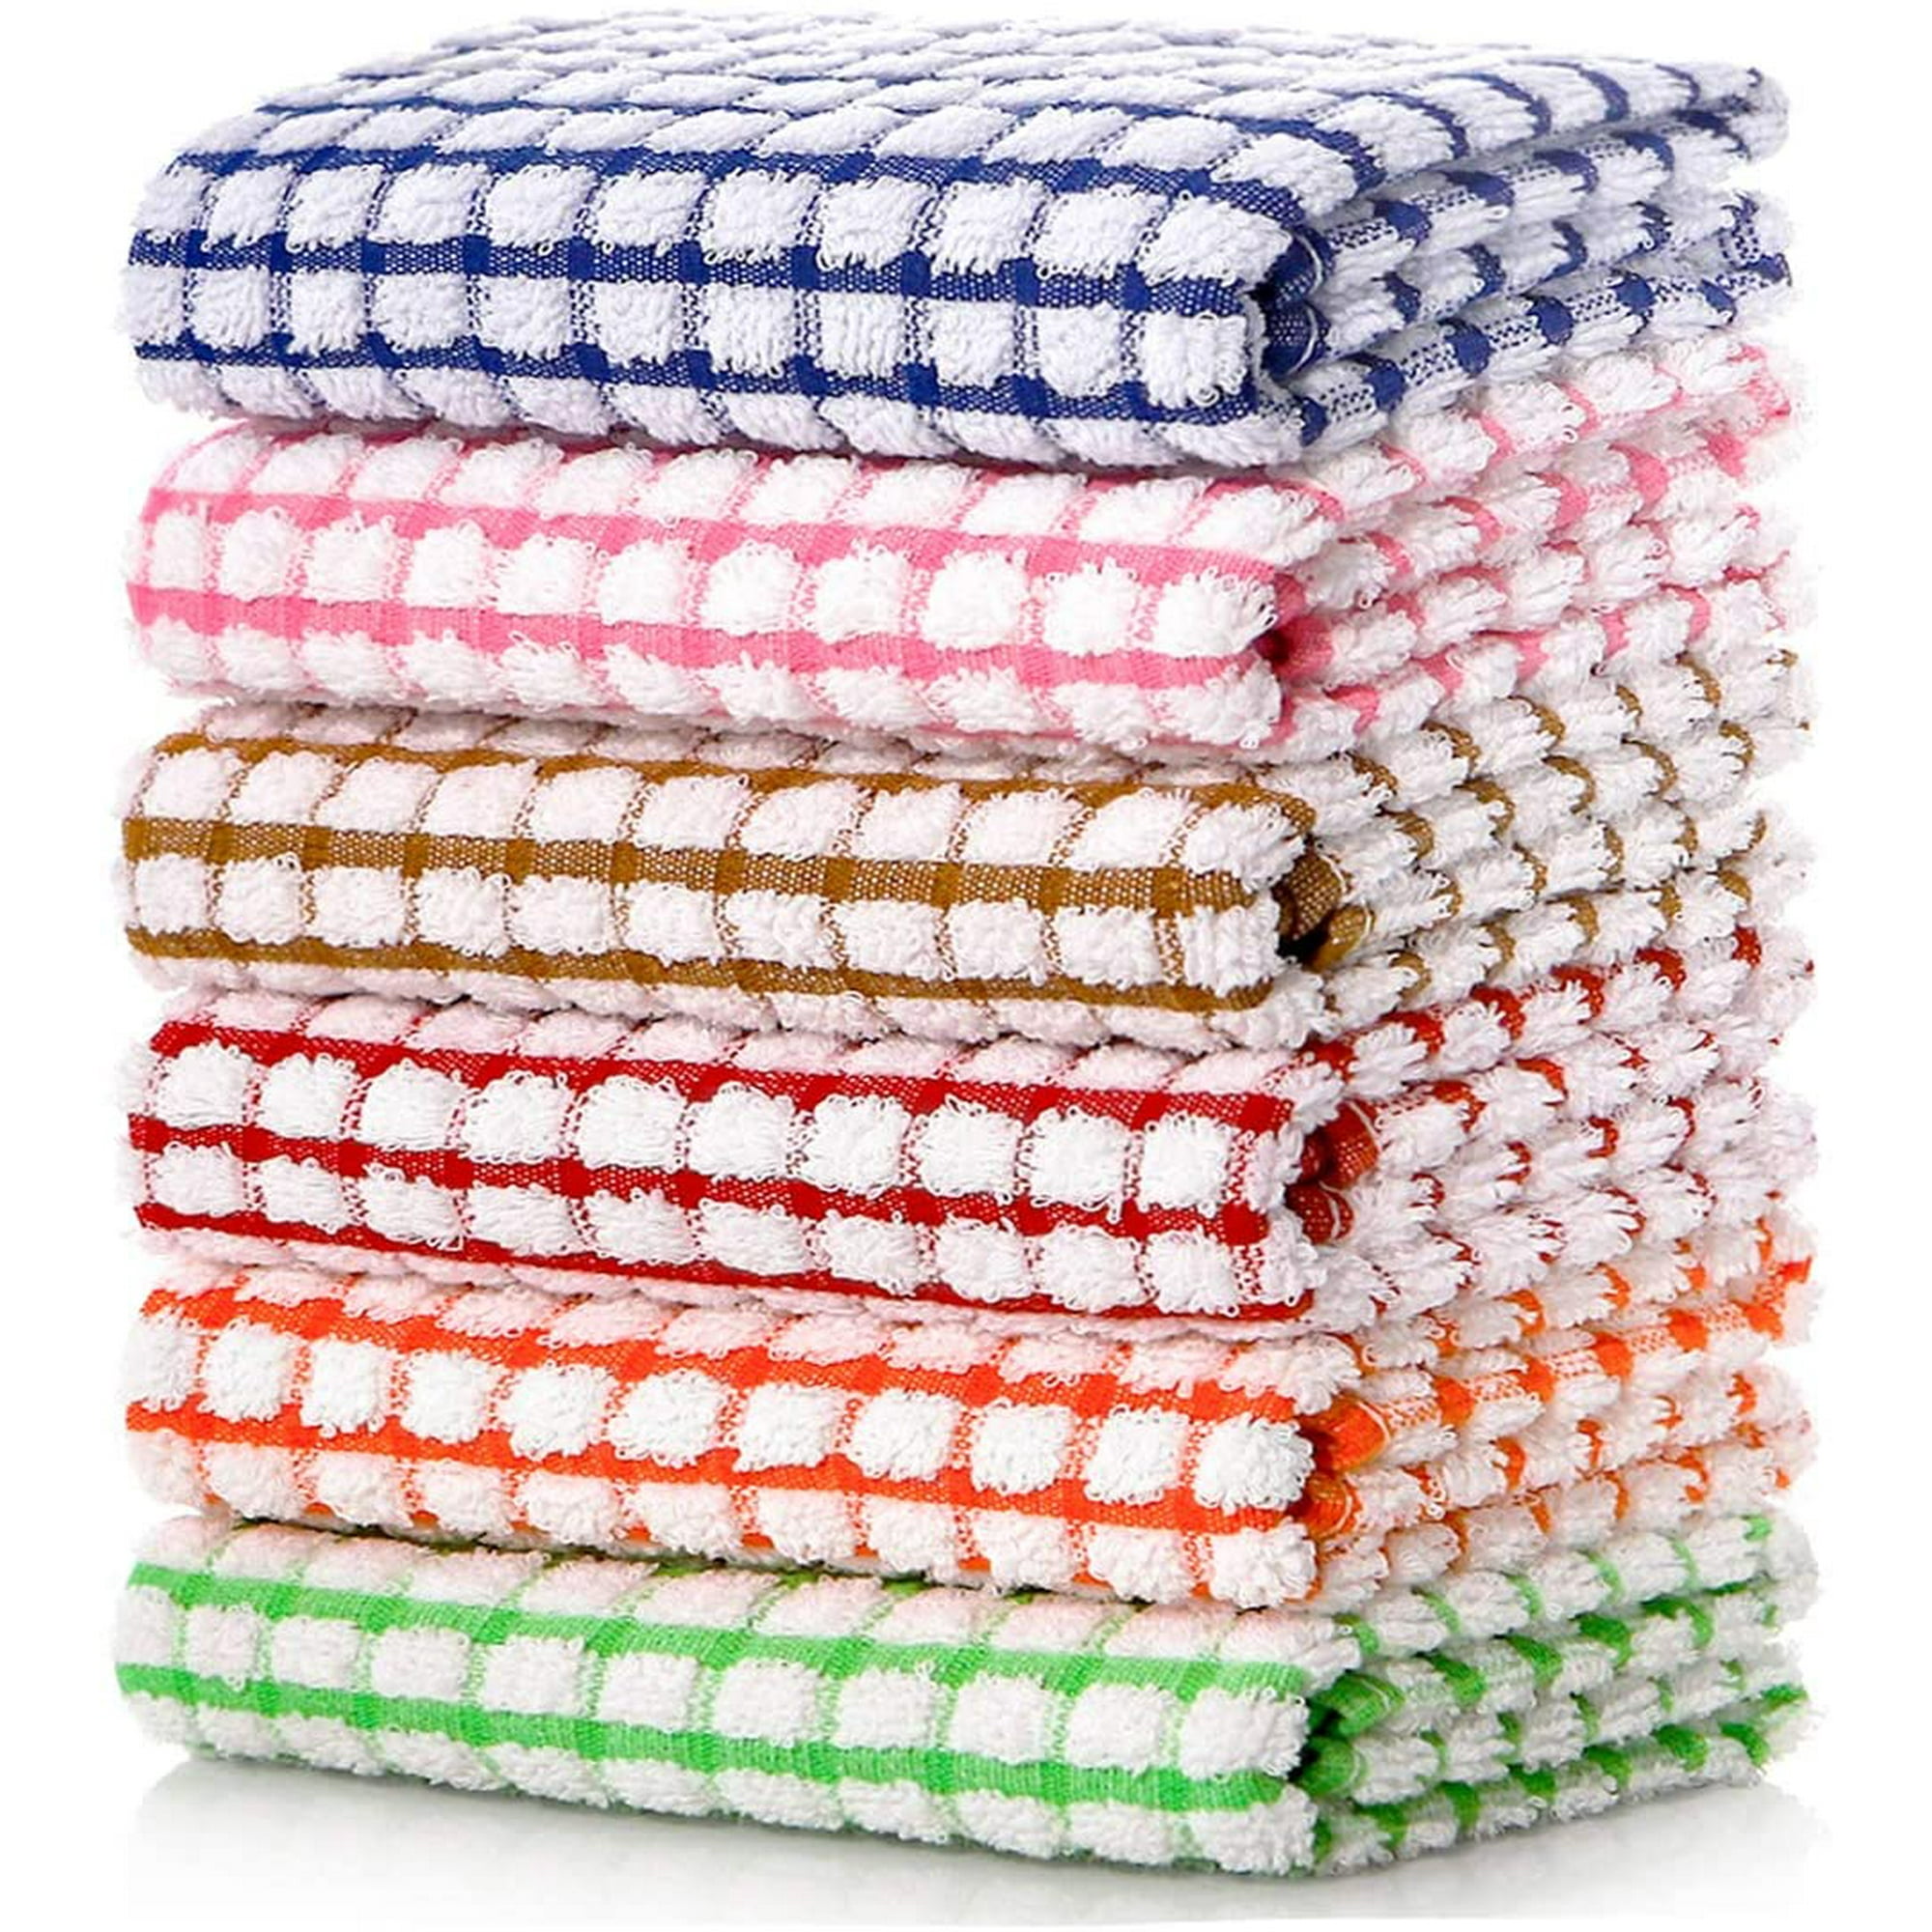 Candy Cottons - Set de 6 trapos de cocina 100% algodón, con lazo p/colgar,  p/lavar y secar platos, se pueden usar como paños de cocina o trapos de